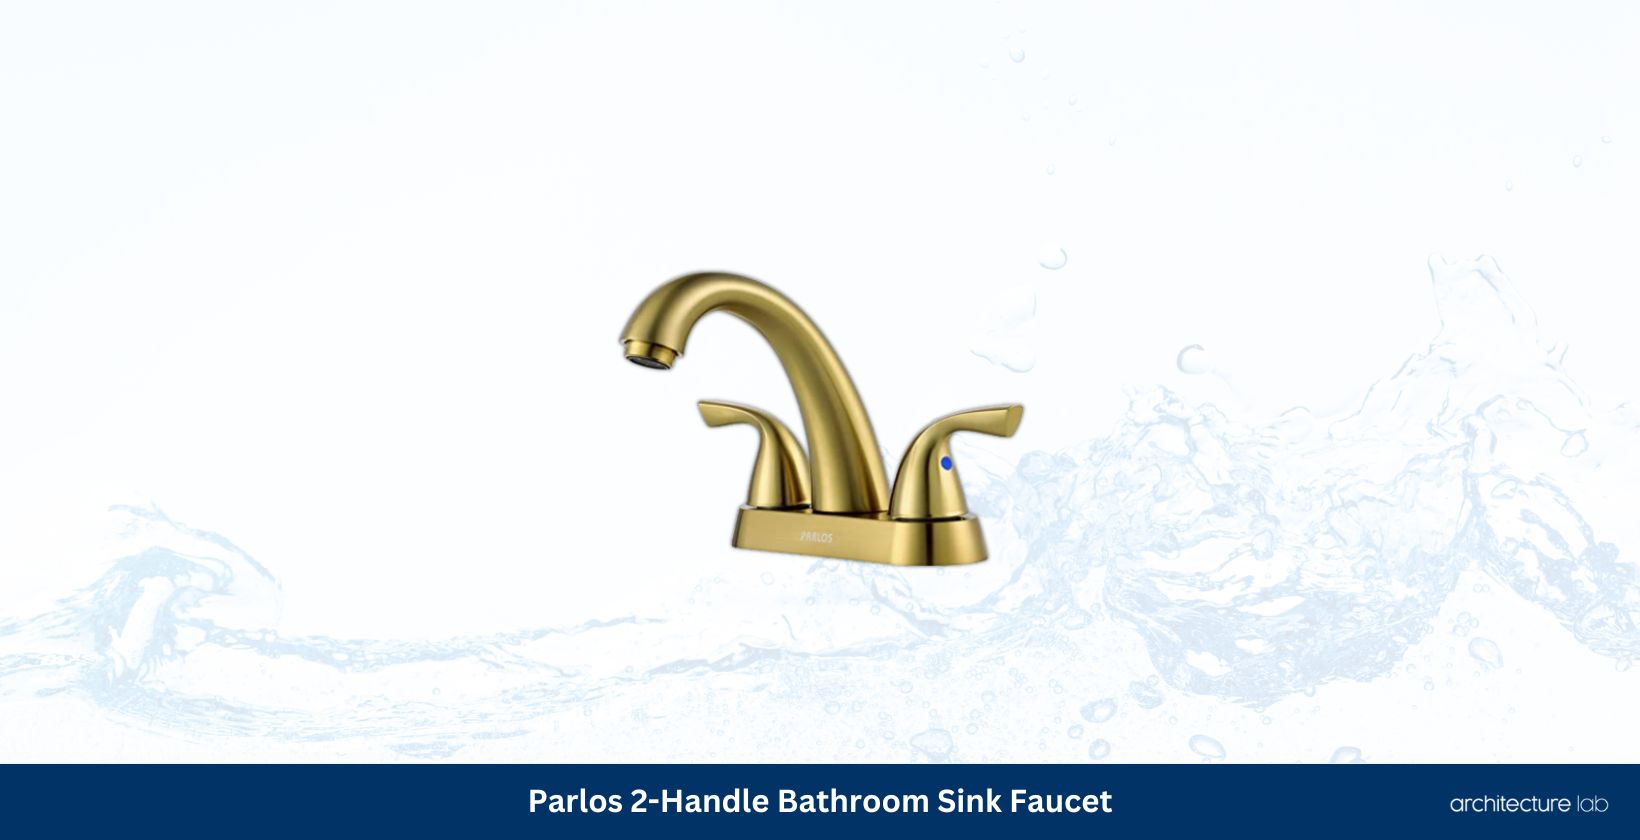 Parlos 2 handle bathroom sink faucet